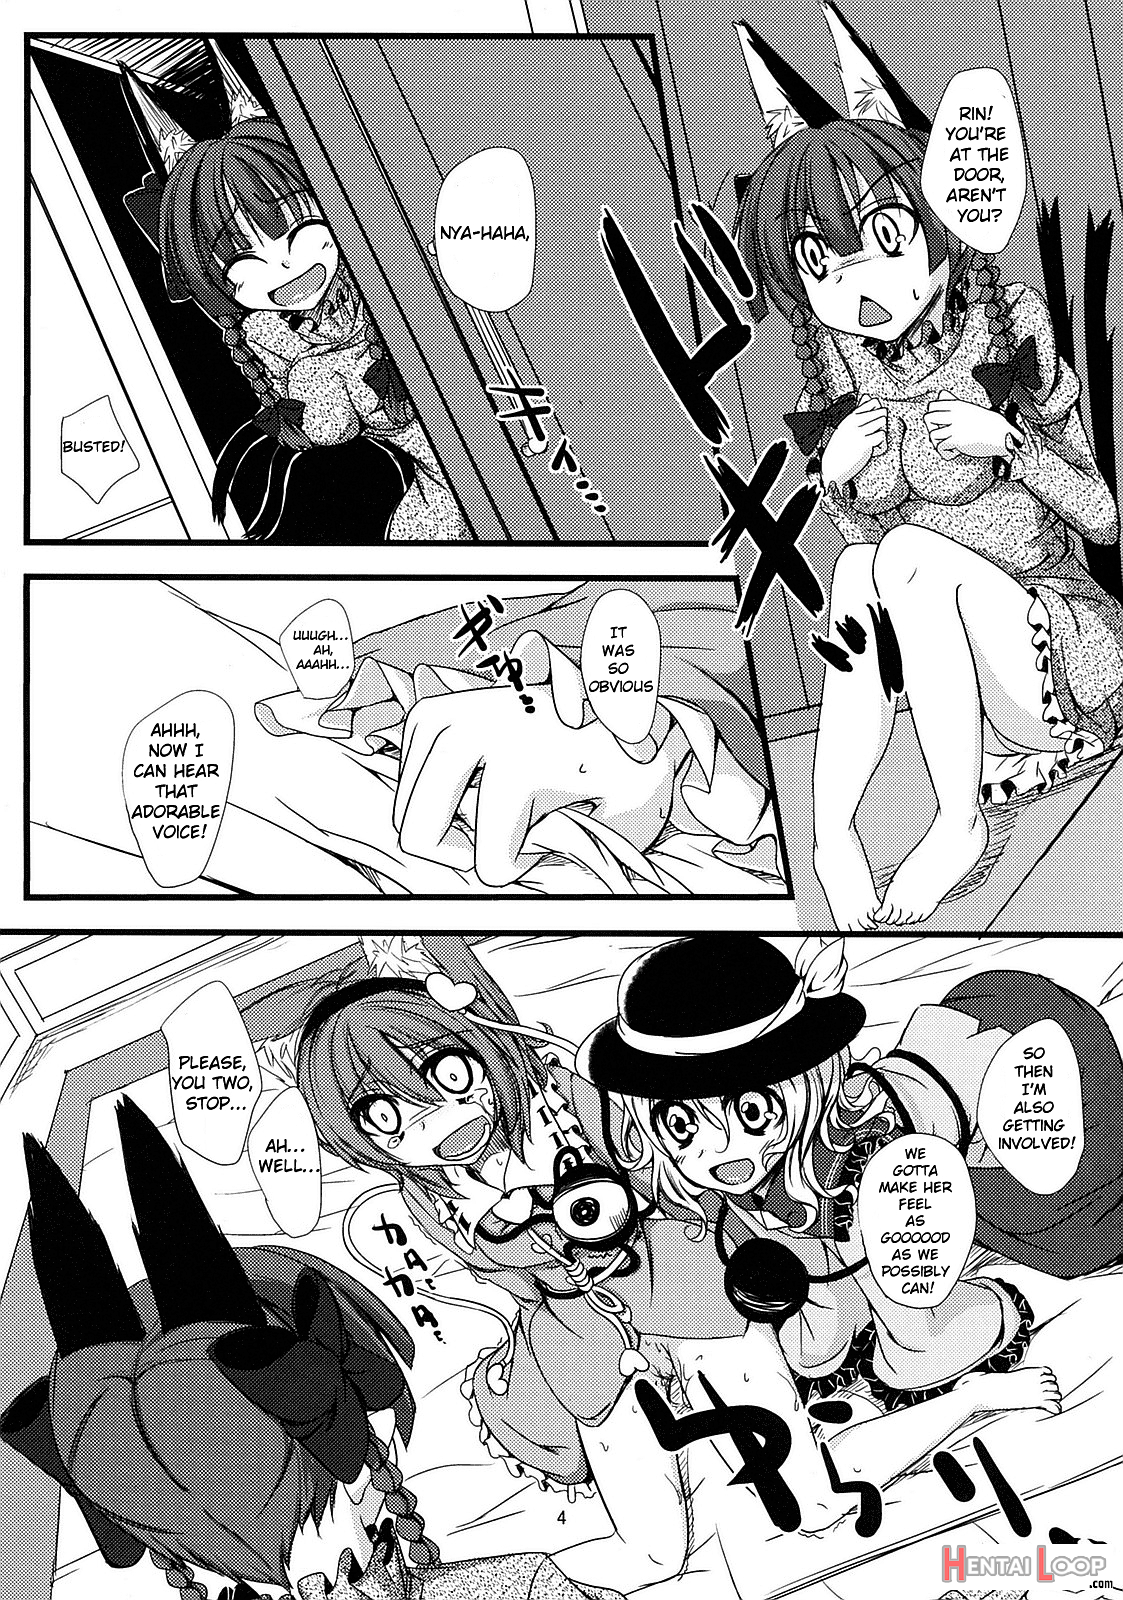 Nyatori-sama No Asobikata page 5